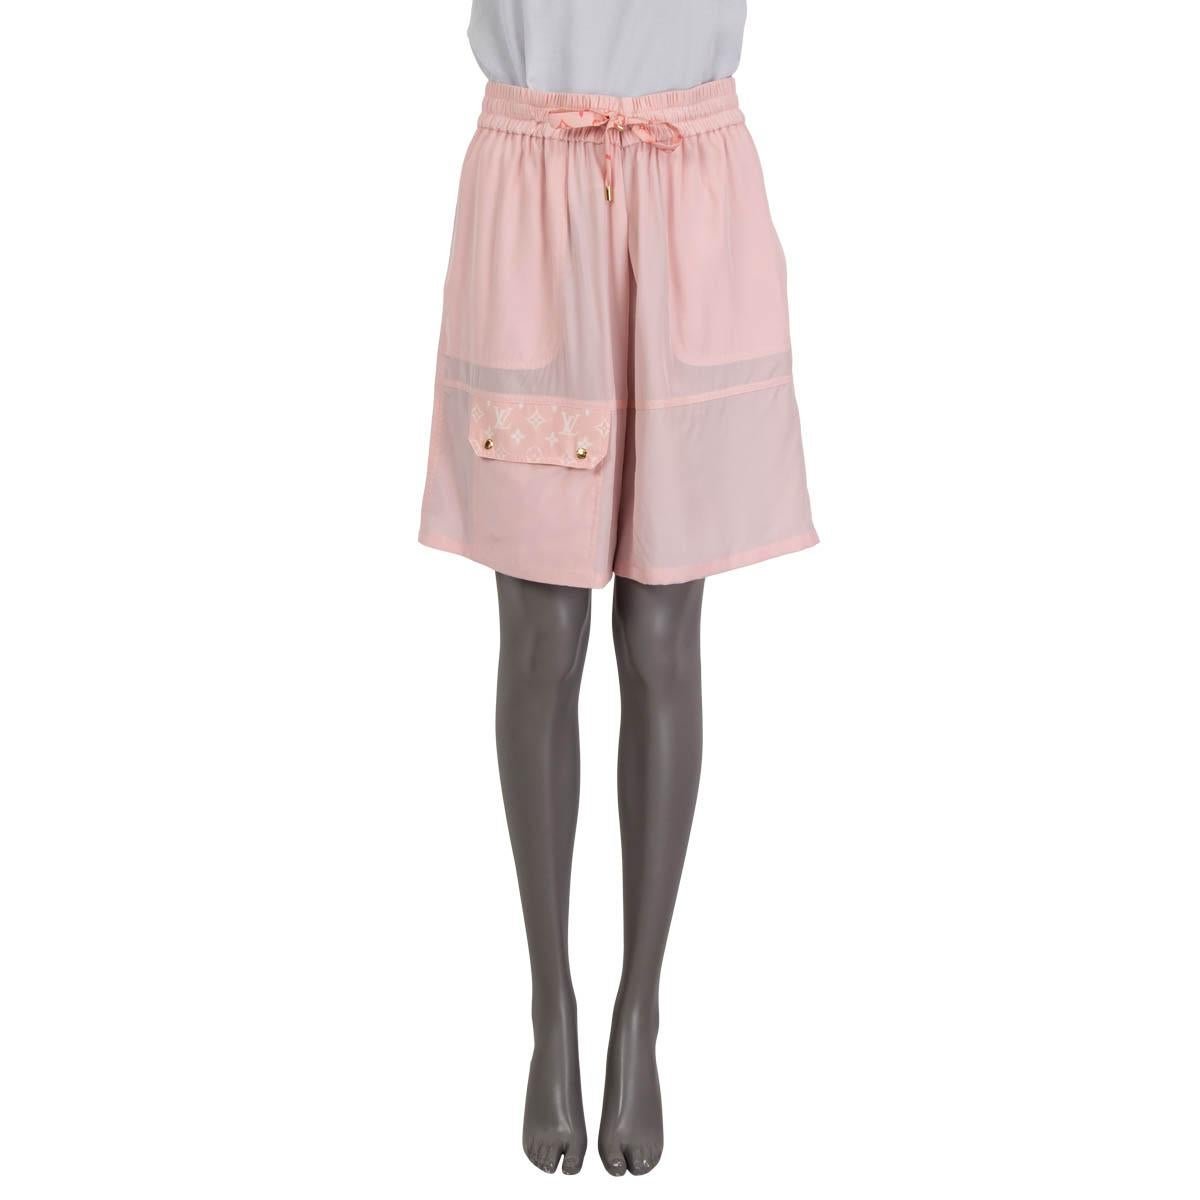 100% authentische Louis Vuitton Bermuda-Shorts mit Ombré-Detail aus rosa Seide (100%). Mit einer geknöpften aufgesetzten Tasche auf der Rückseite, zwei aufgesetzten Taschen und einer geknöpften Pattentasche auf der Vorderseite. Mit Kordelzug zu